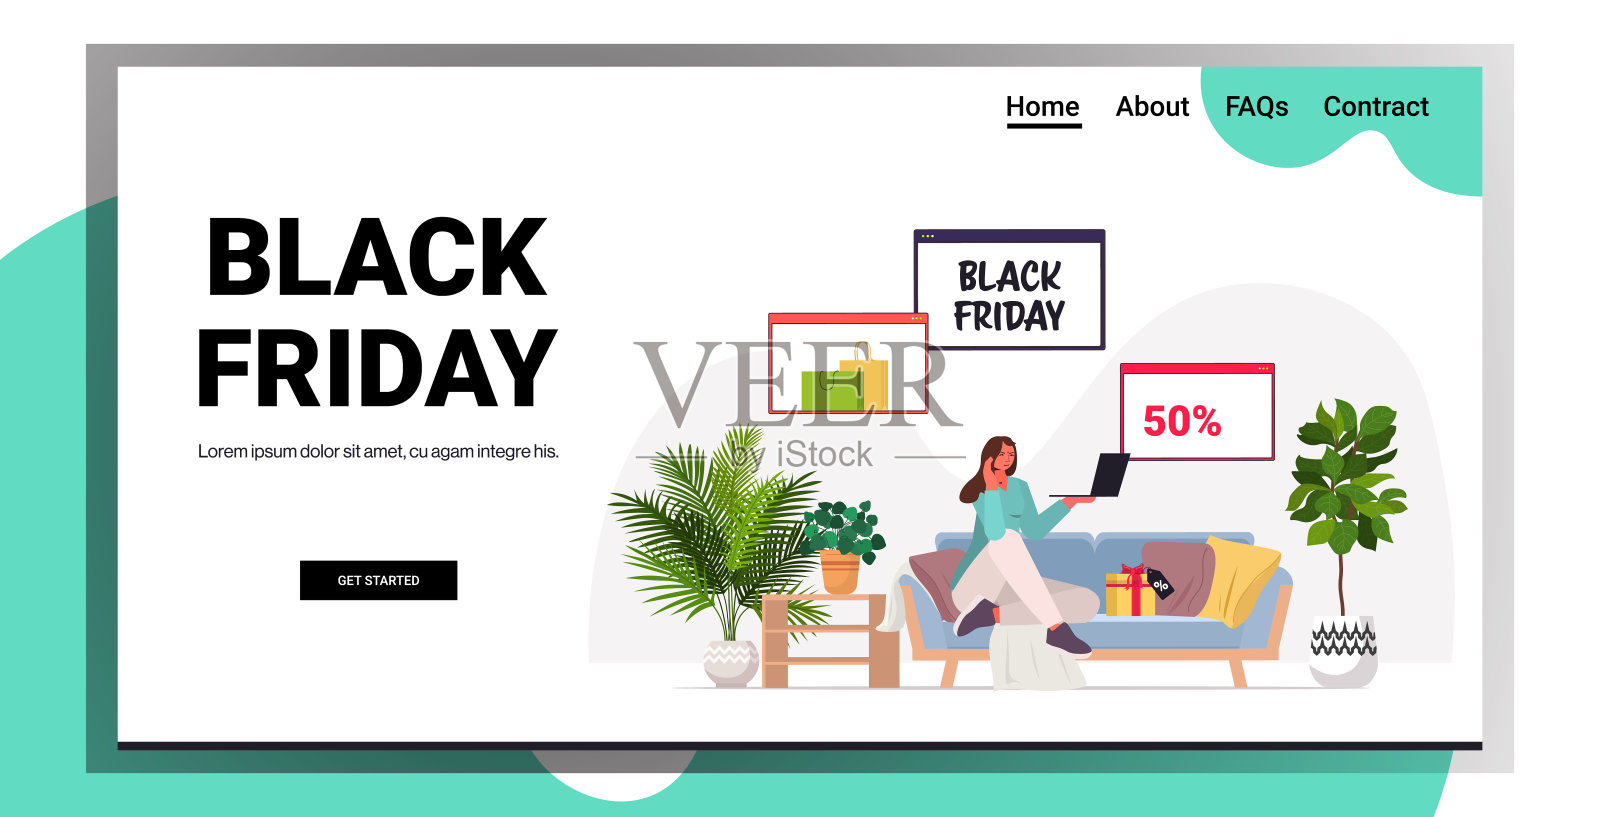 女人用笔记本电脑网上购物黑色星期五大减价假期打折概念客厅室内设计模板素材